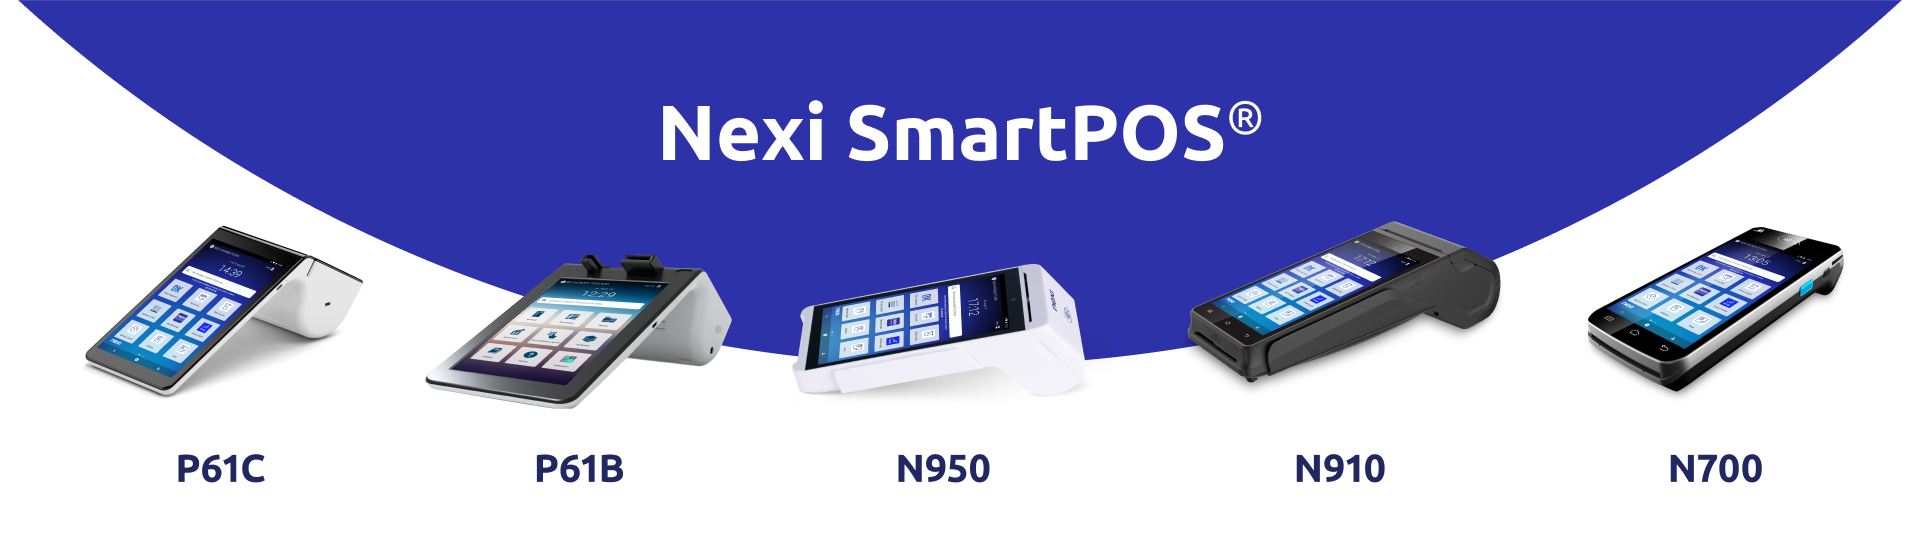 Nexi SmartPOS range